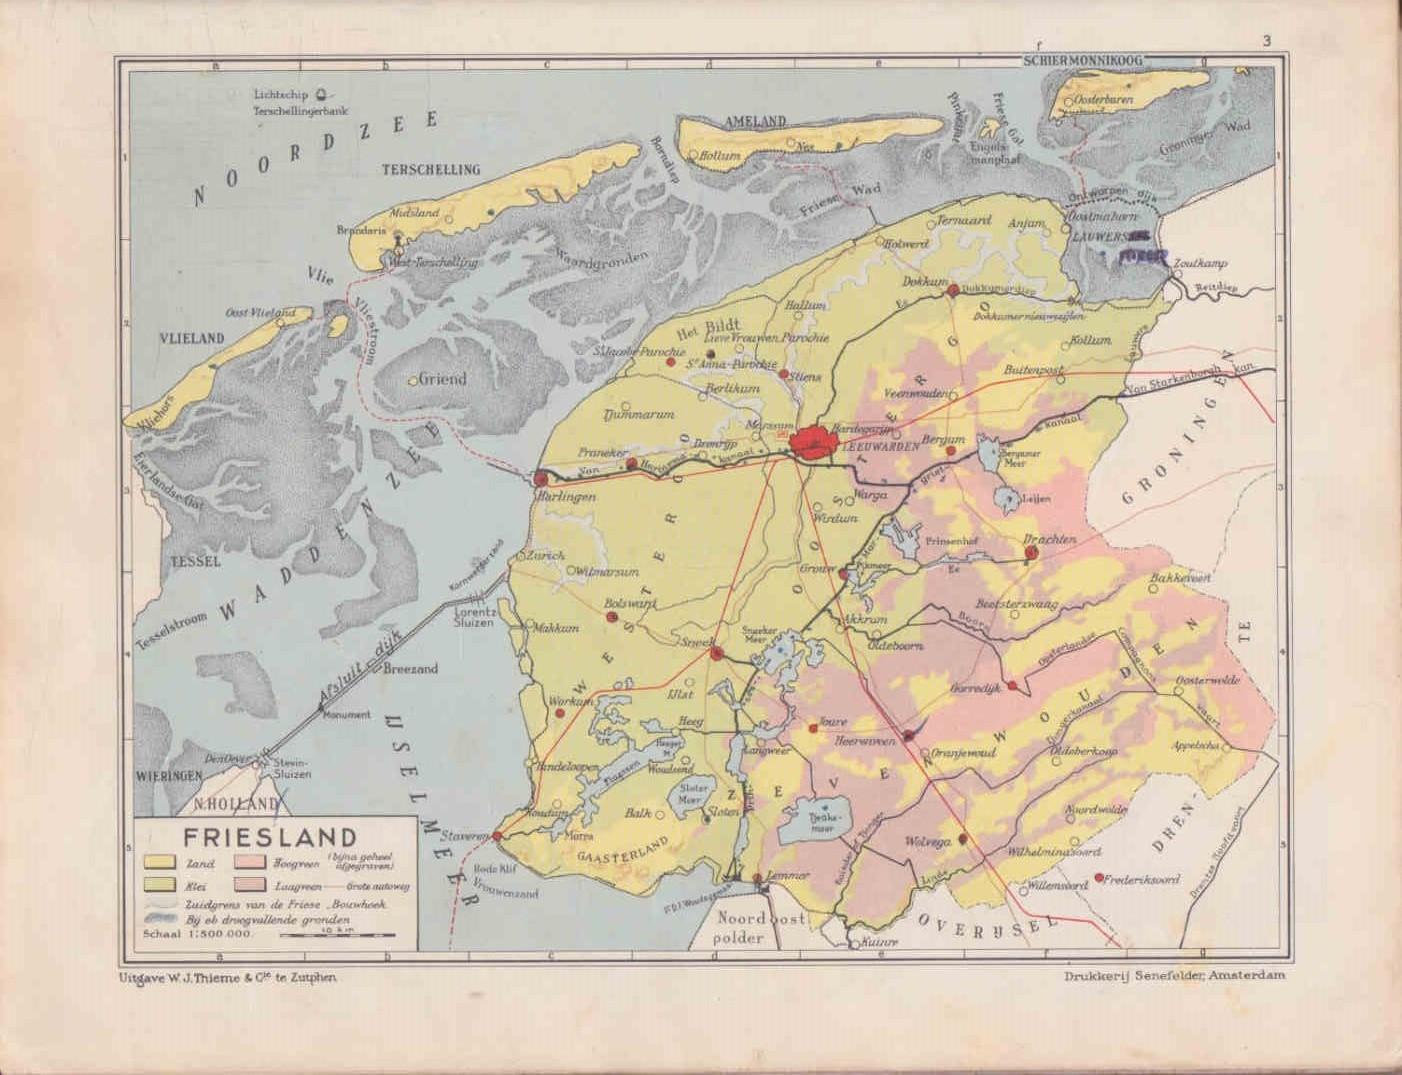 Prop, G. & Beek, B.J. ter - Atlas Nederland en de West